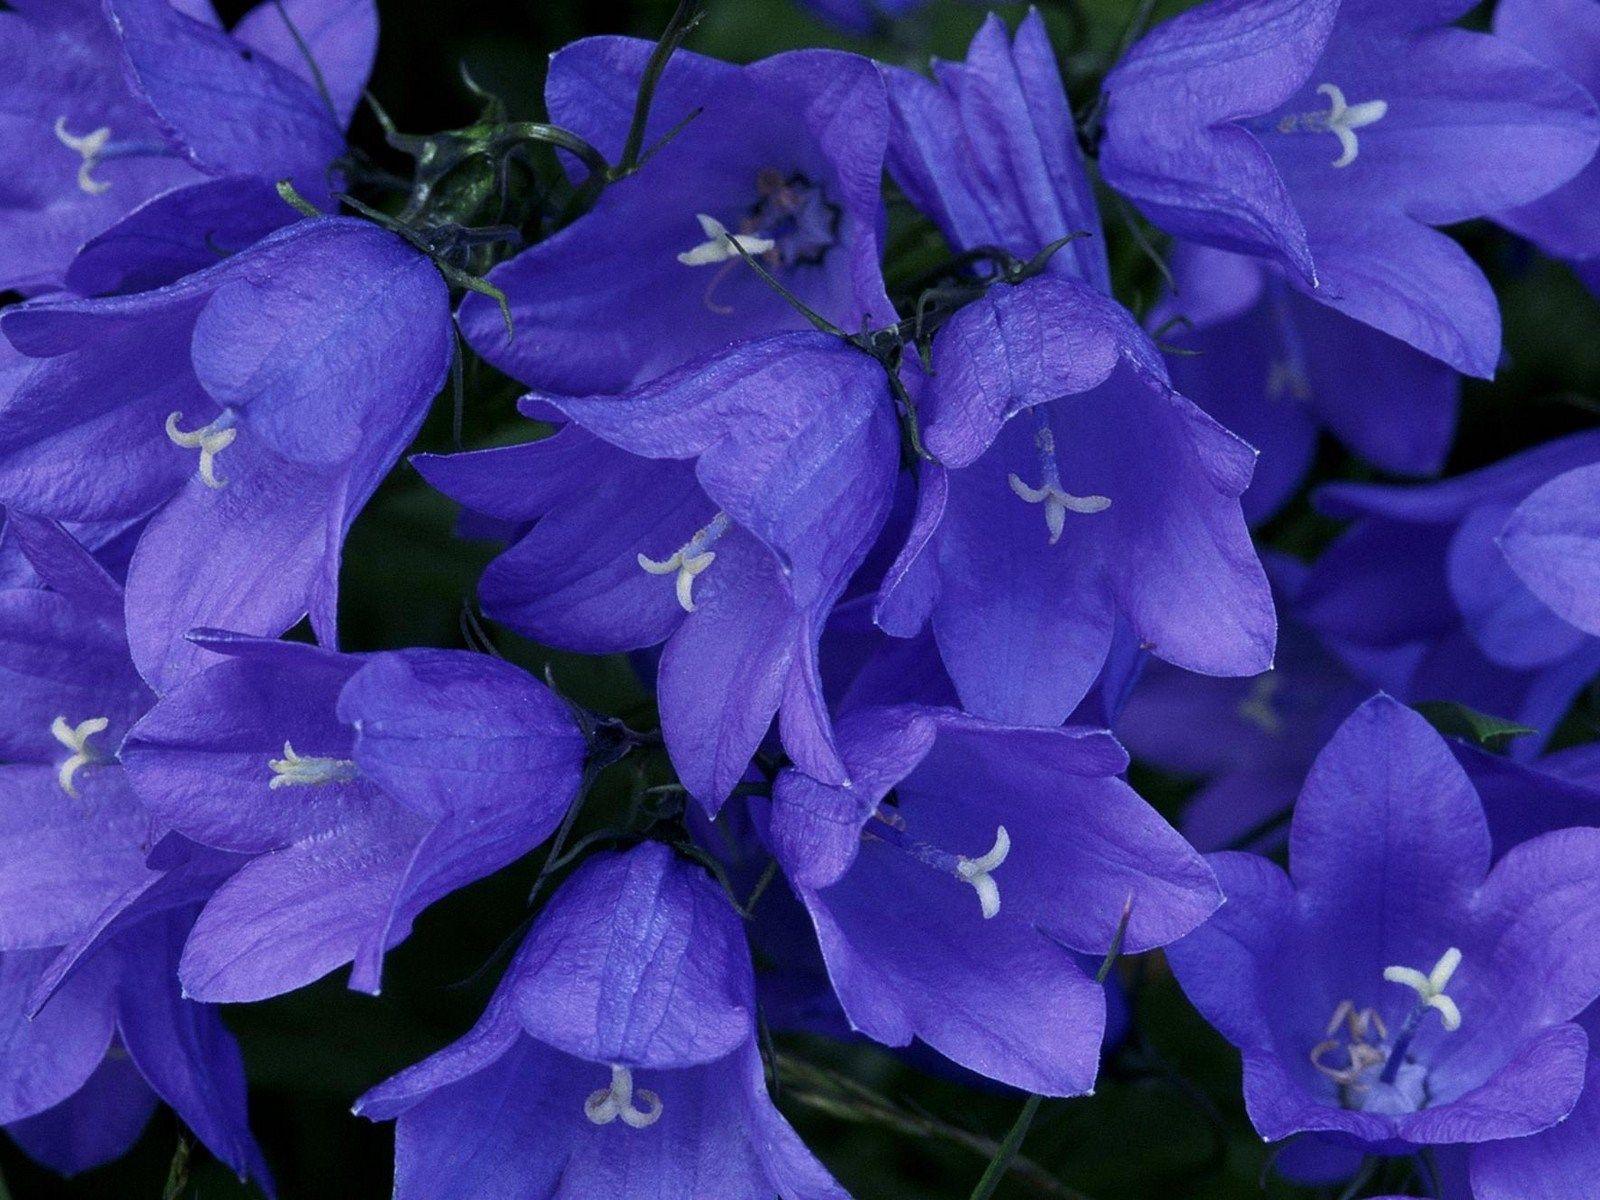 blue bells wallpaper. Beautiful flowers wallpaper, Bellflower